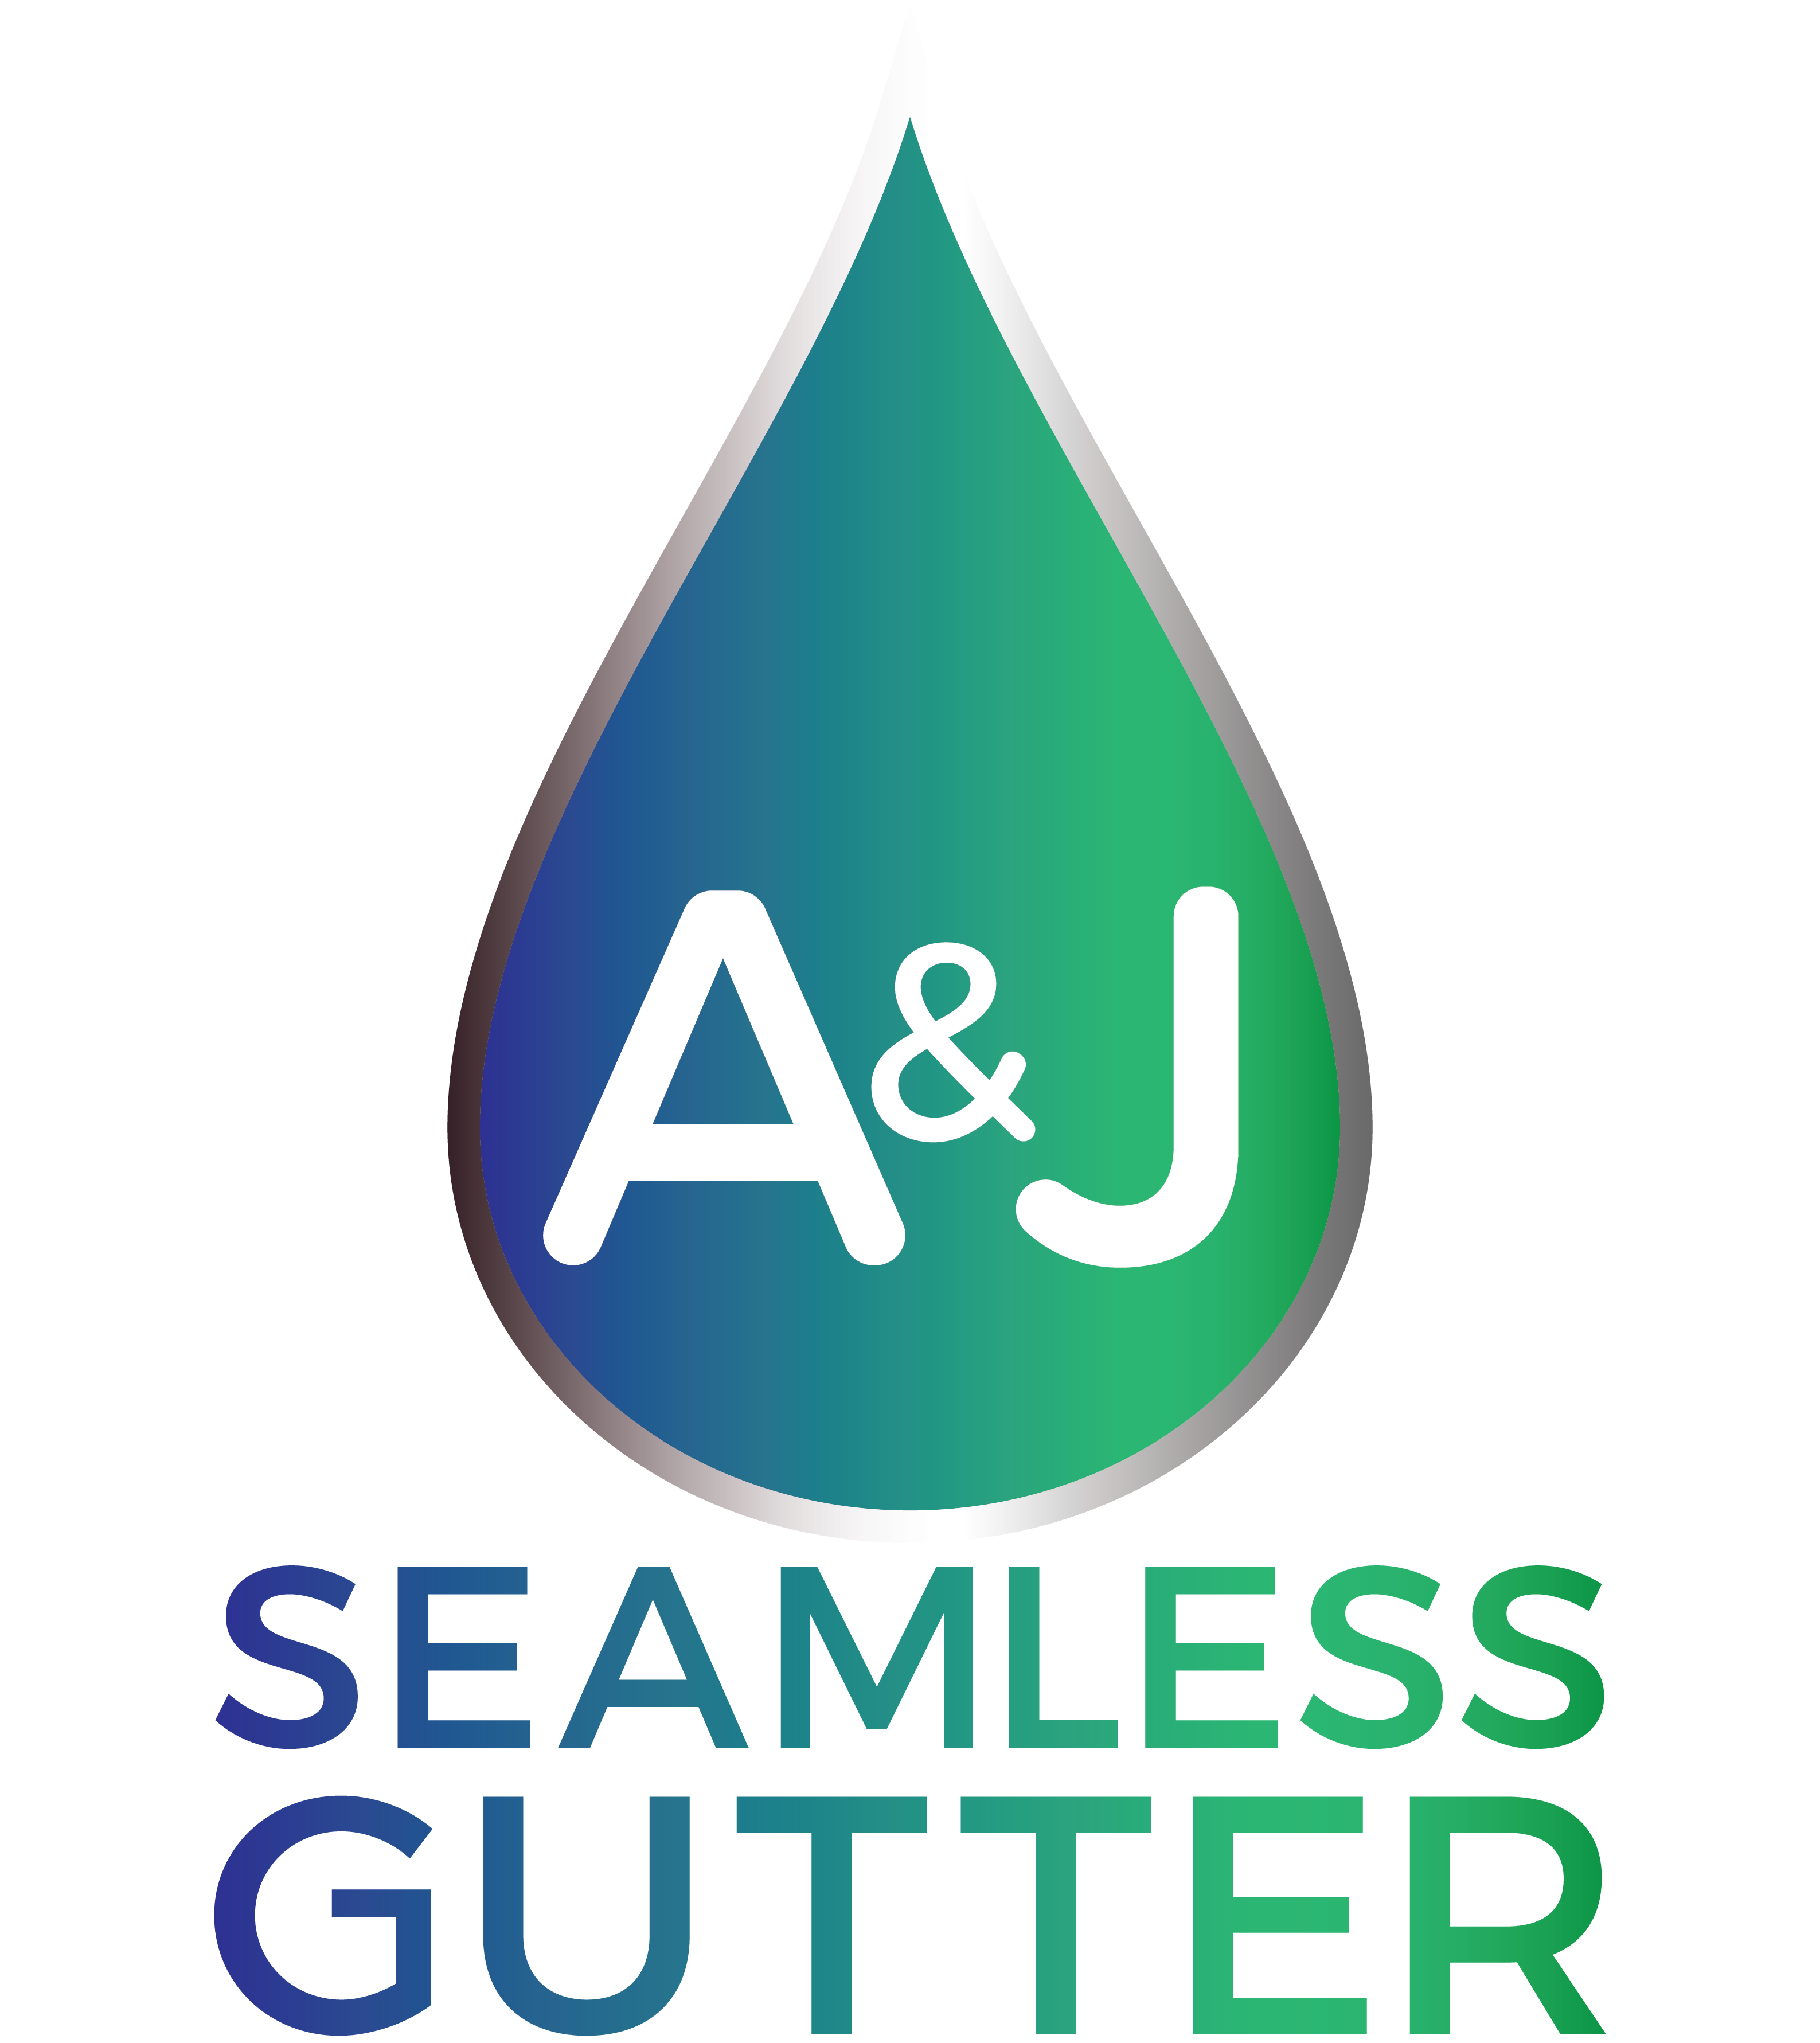 A&J Seamless gutter